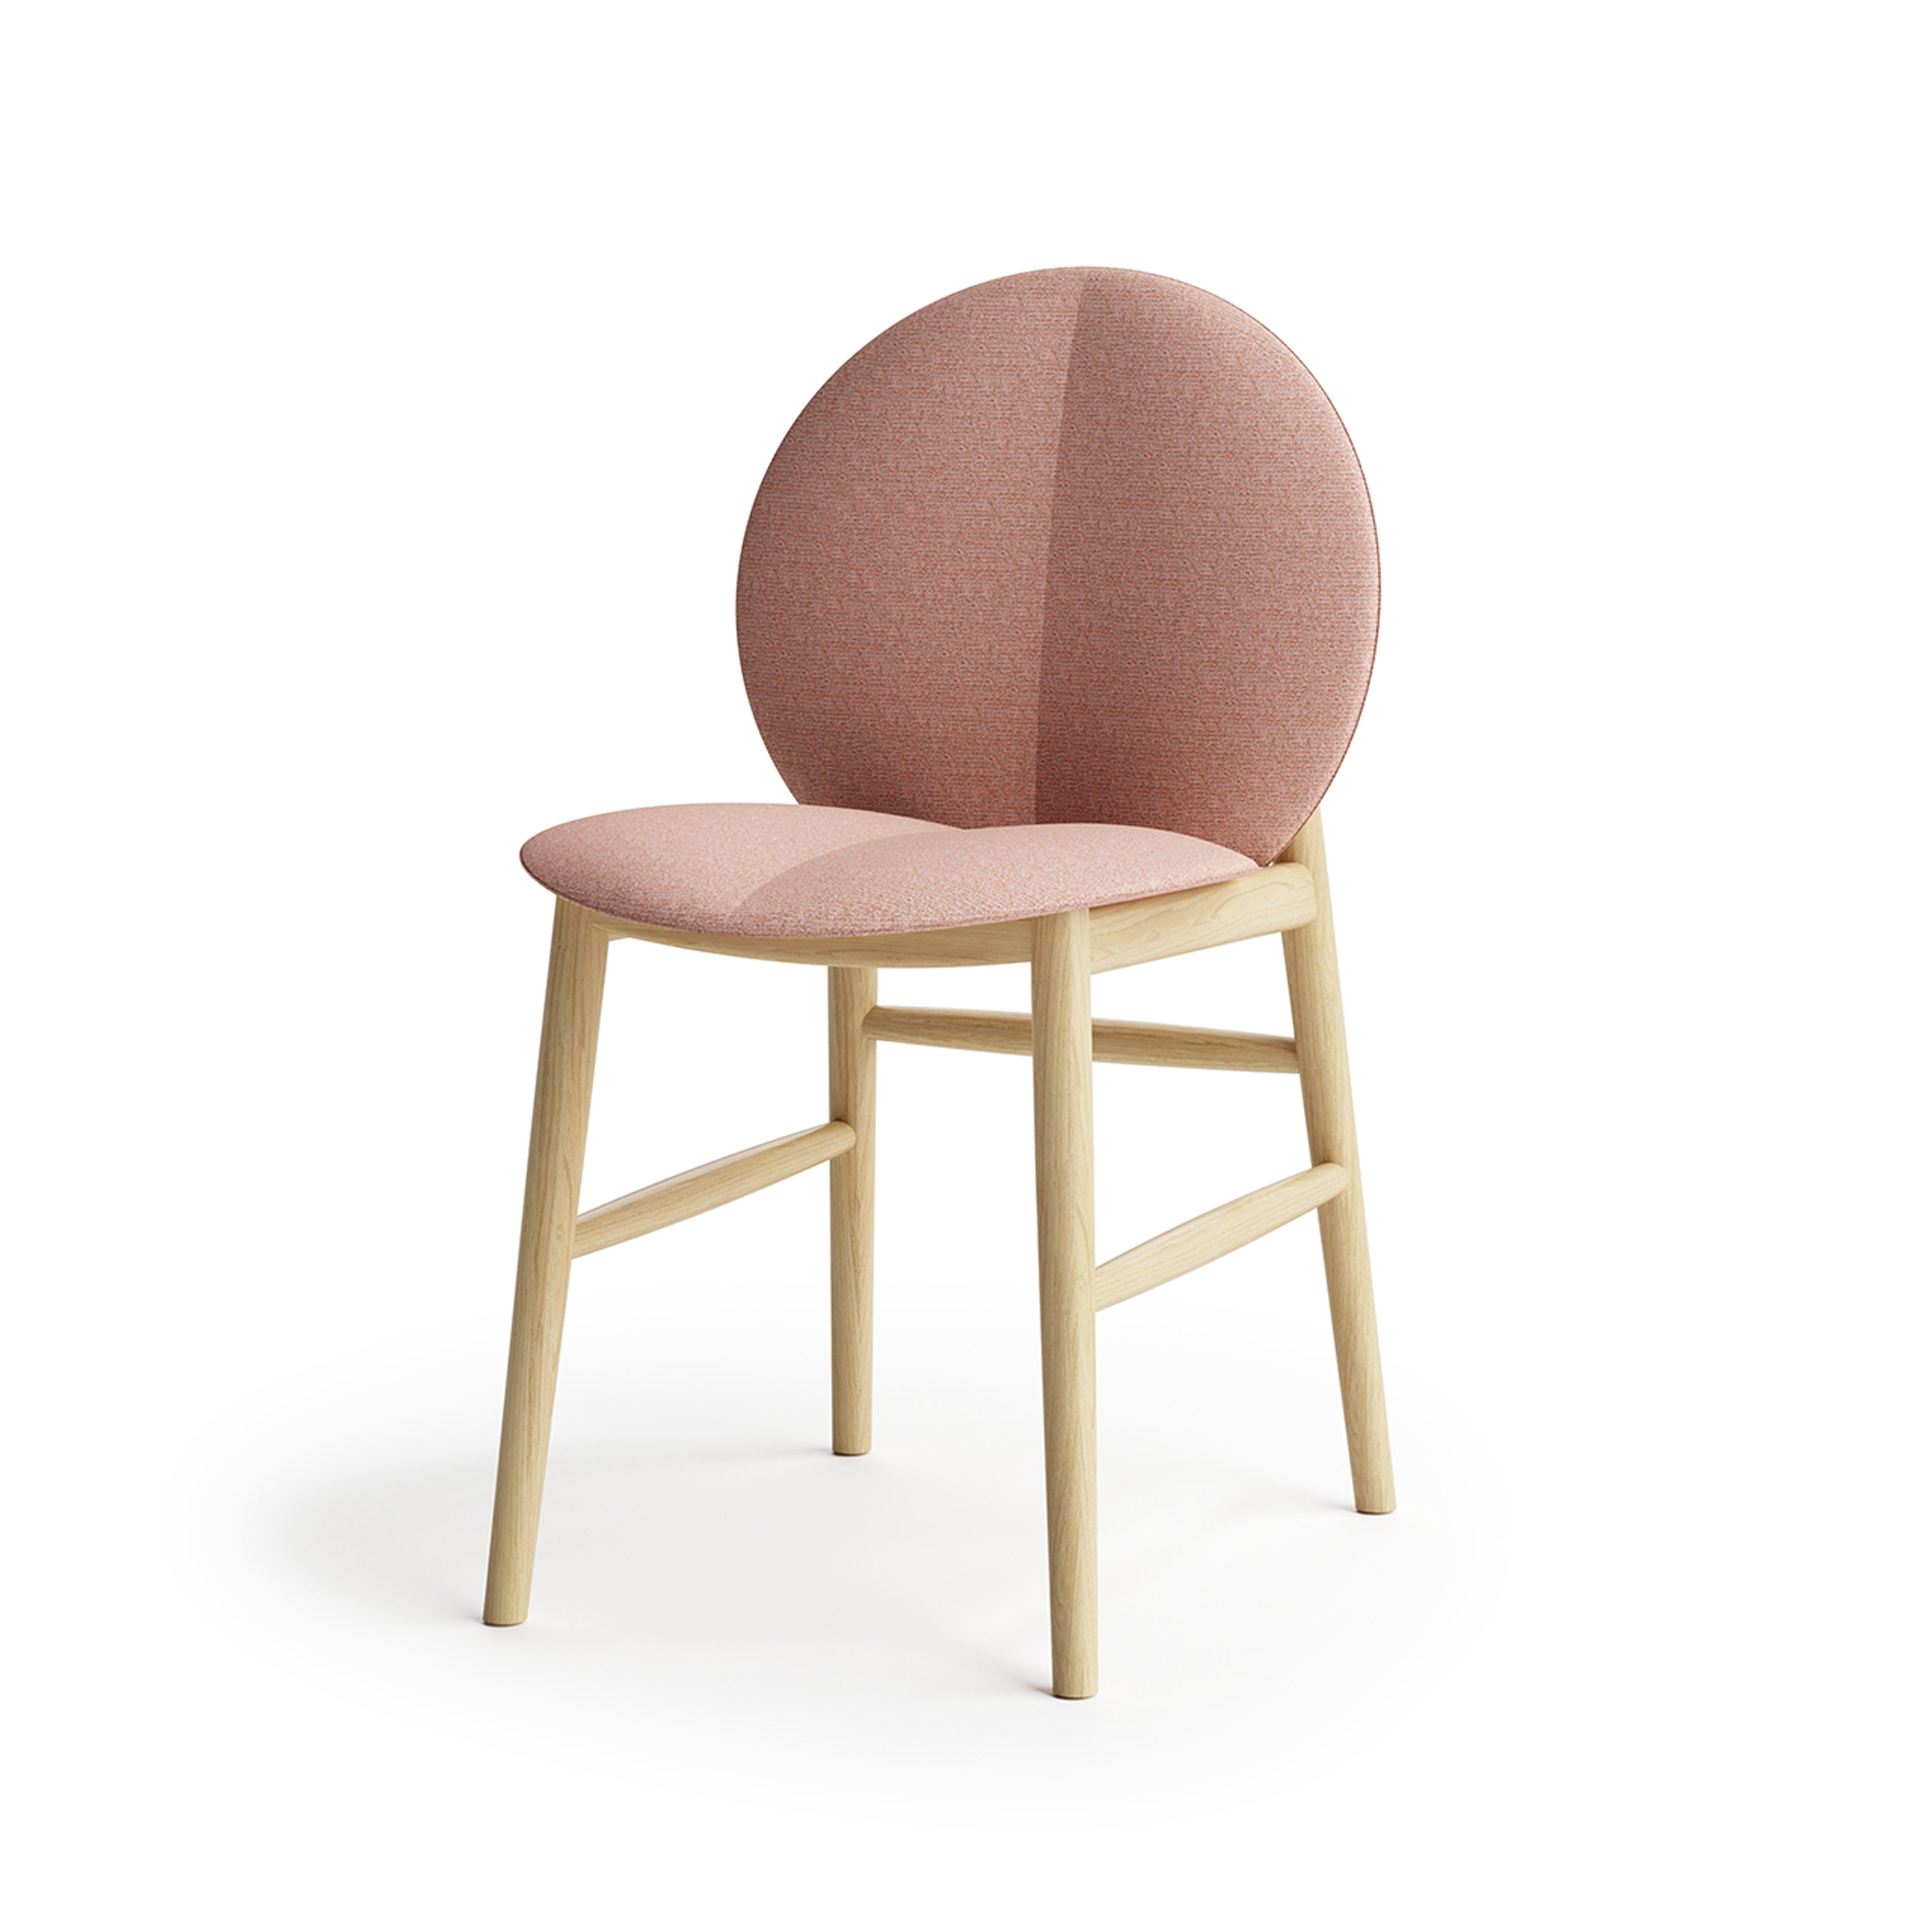 Peach - Chair